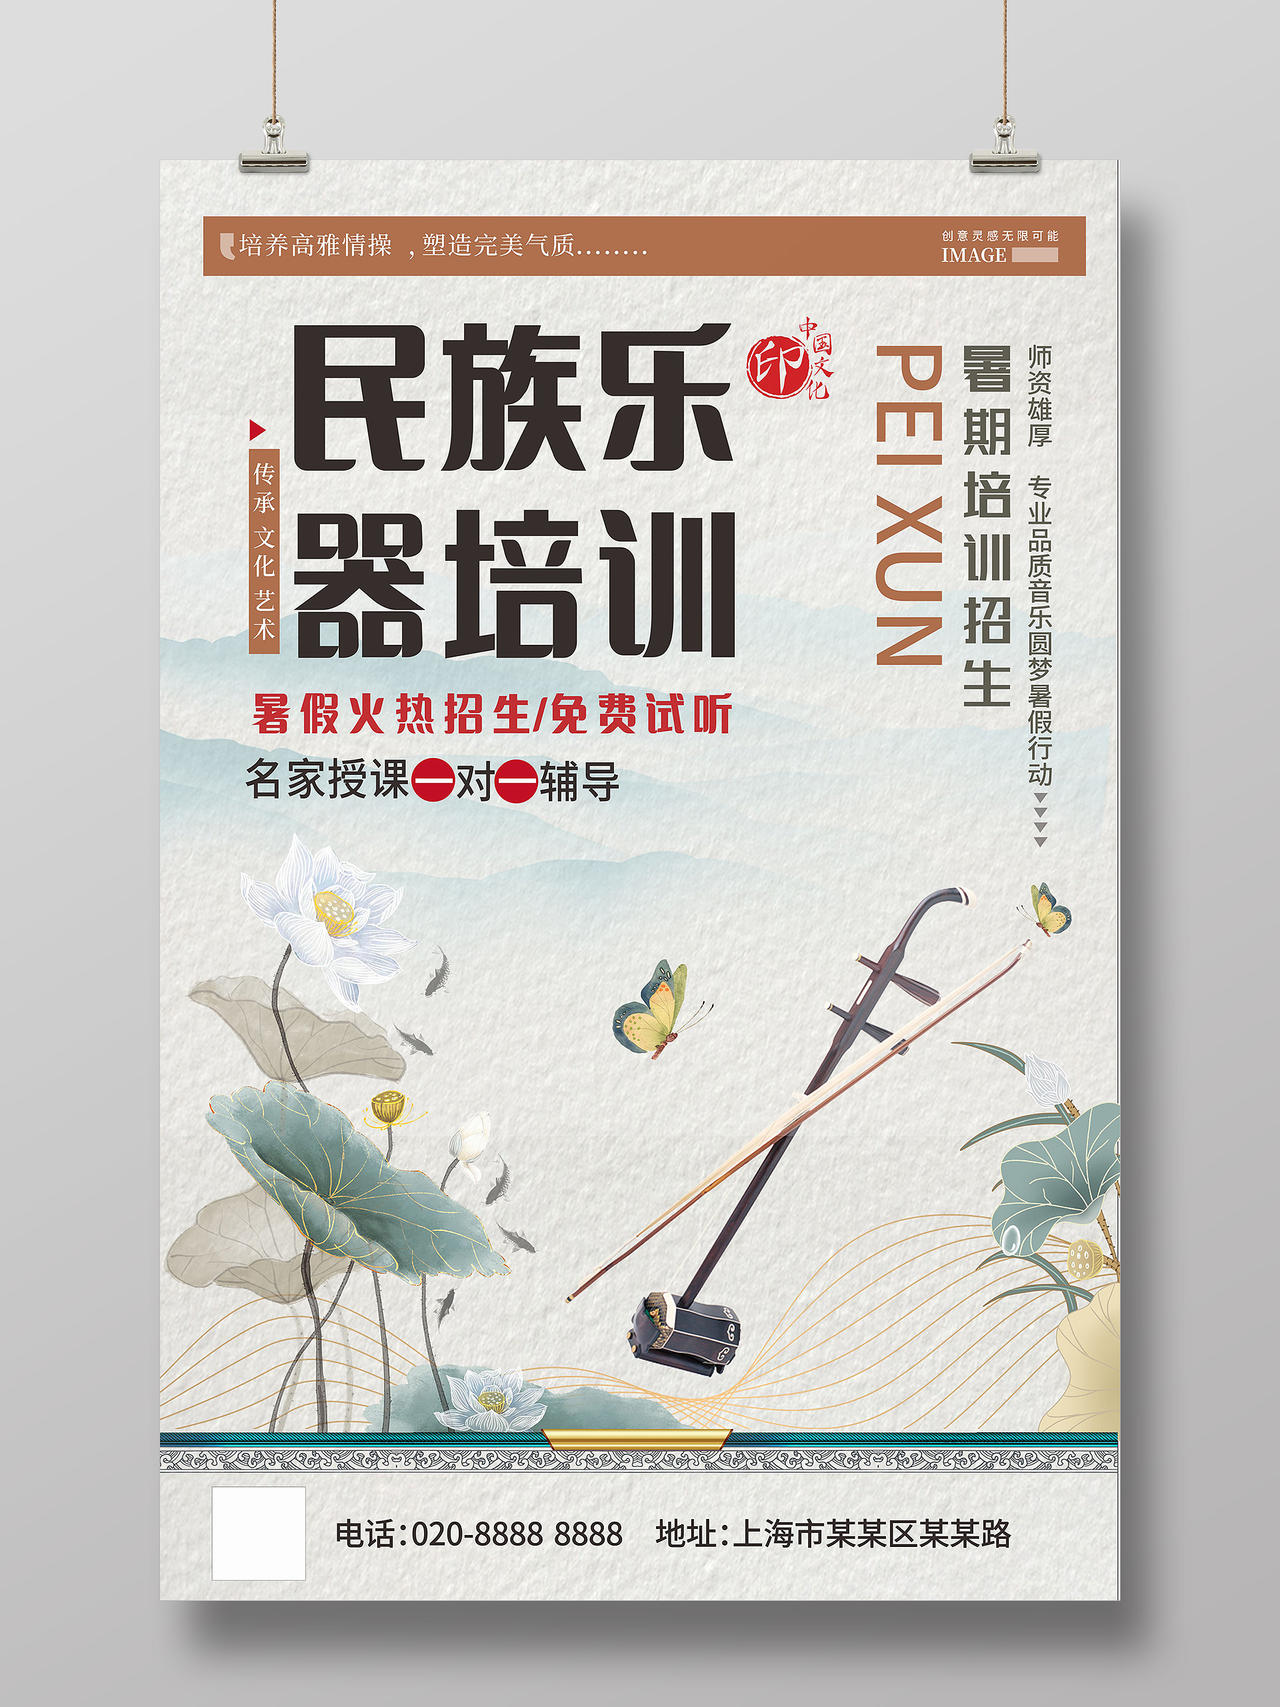 清新简约中国风民族乐器培训二胡海报